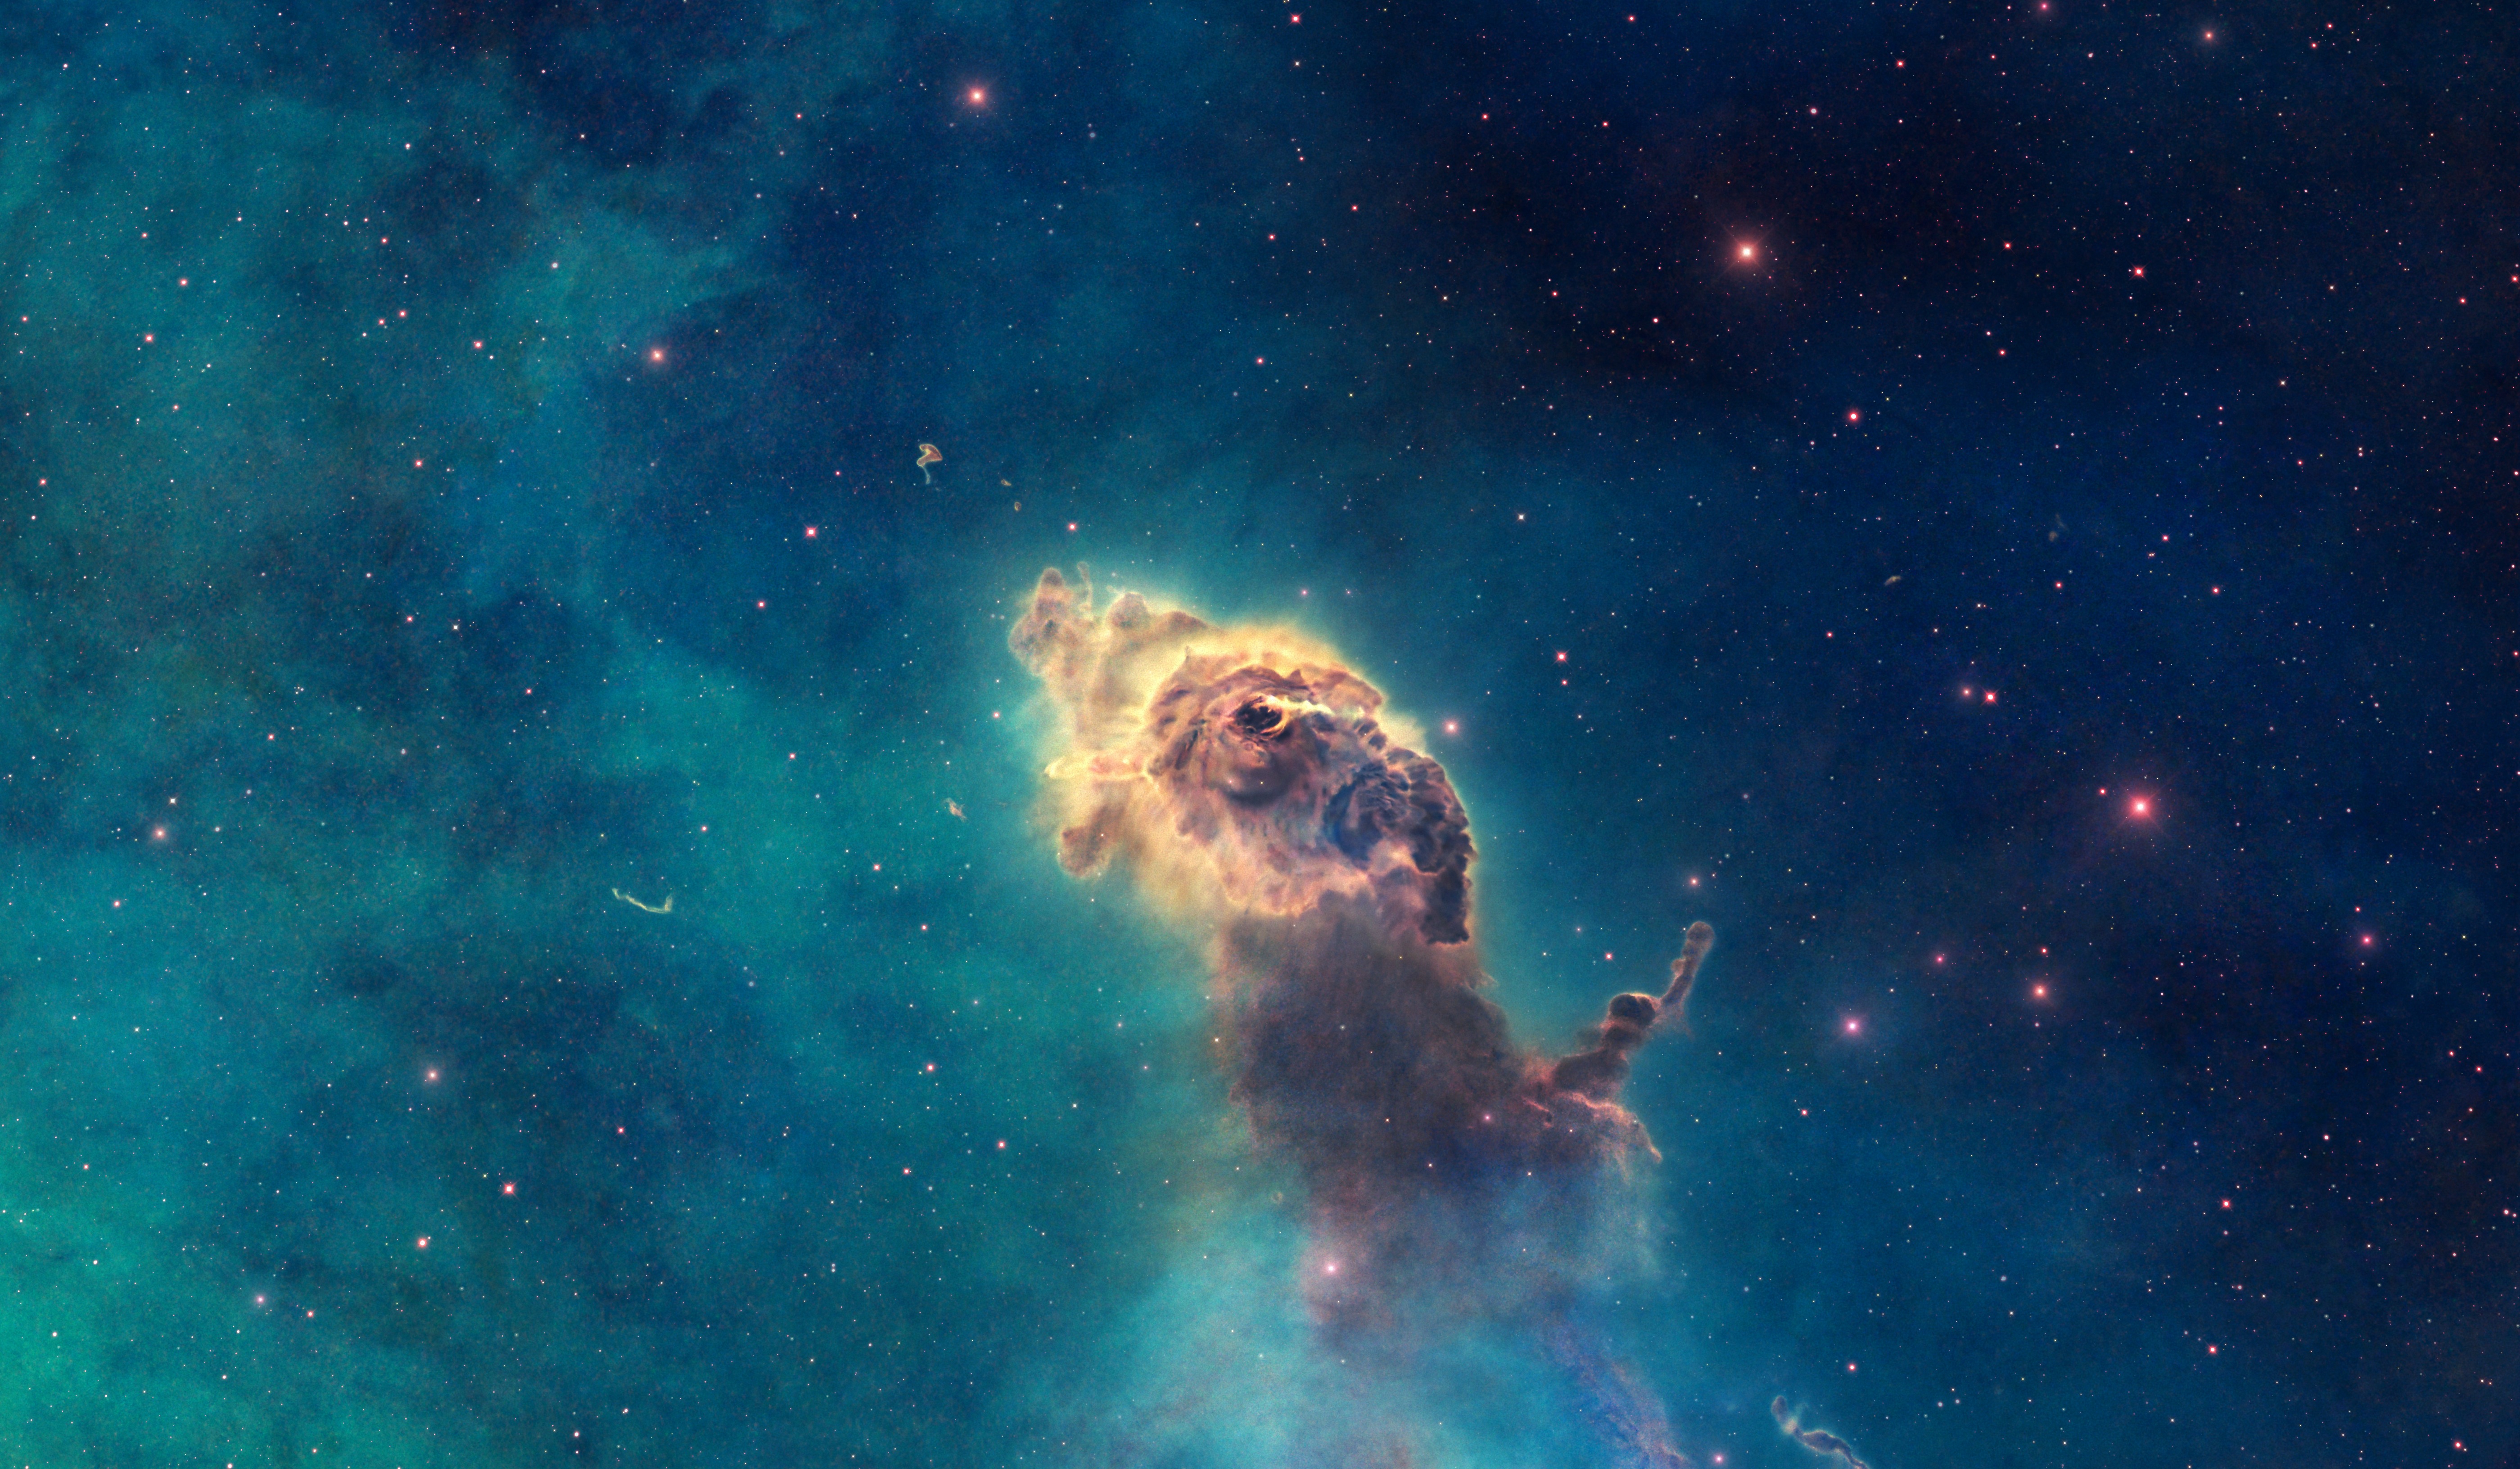 Carina Nebula Courtesy Of The Hubble